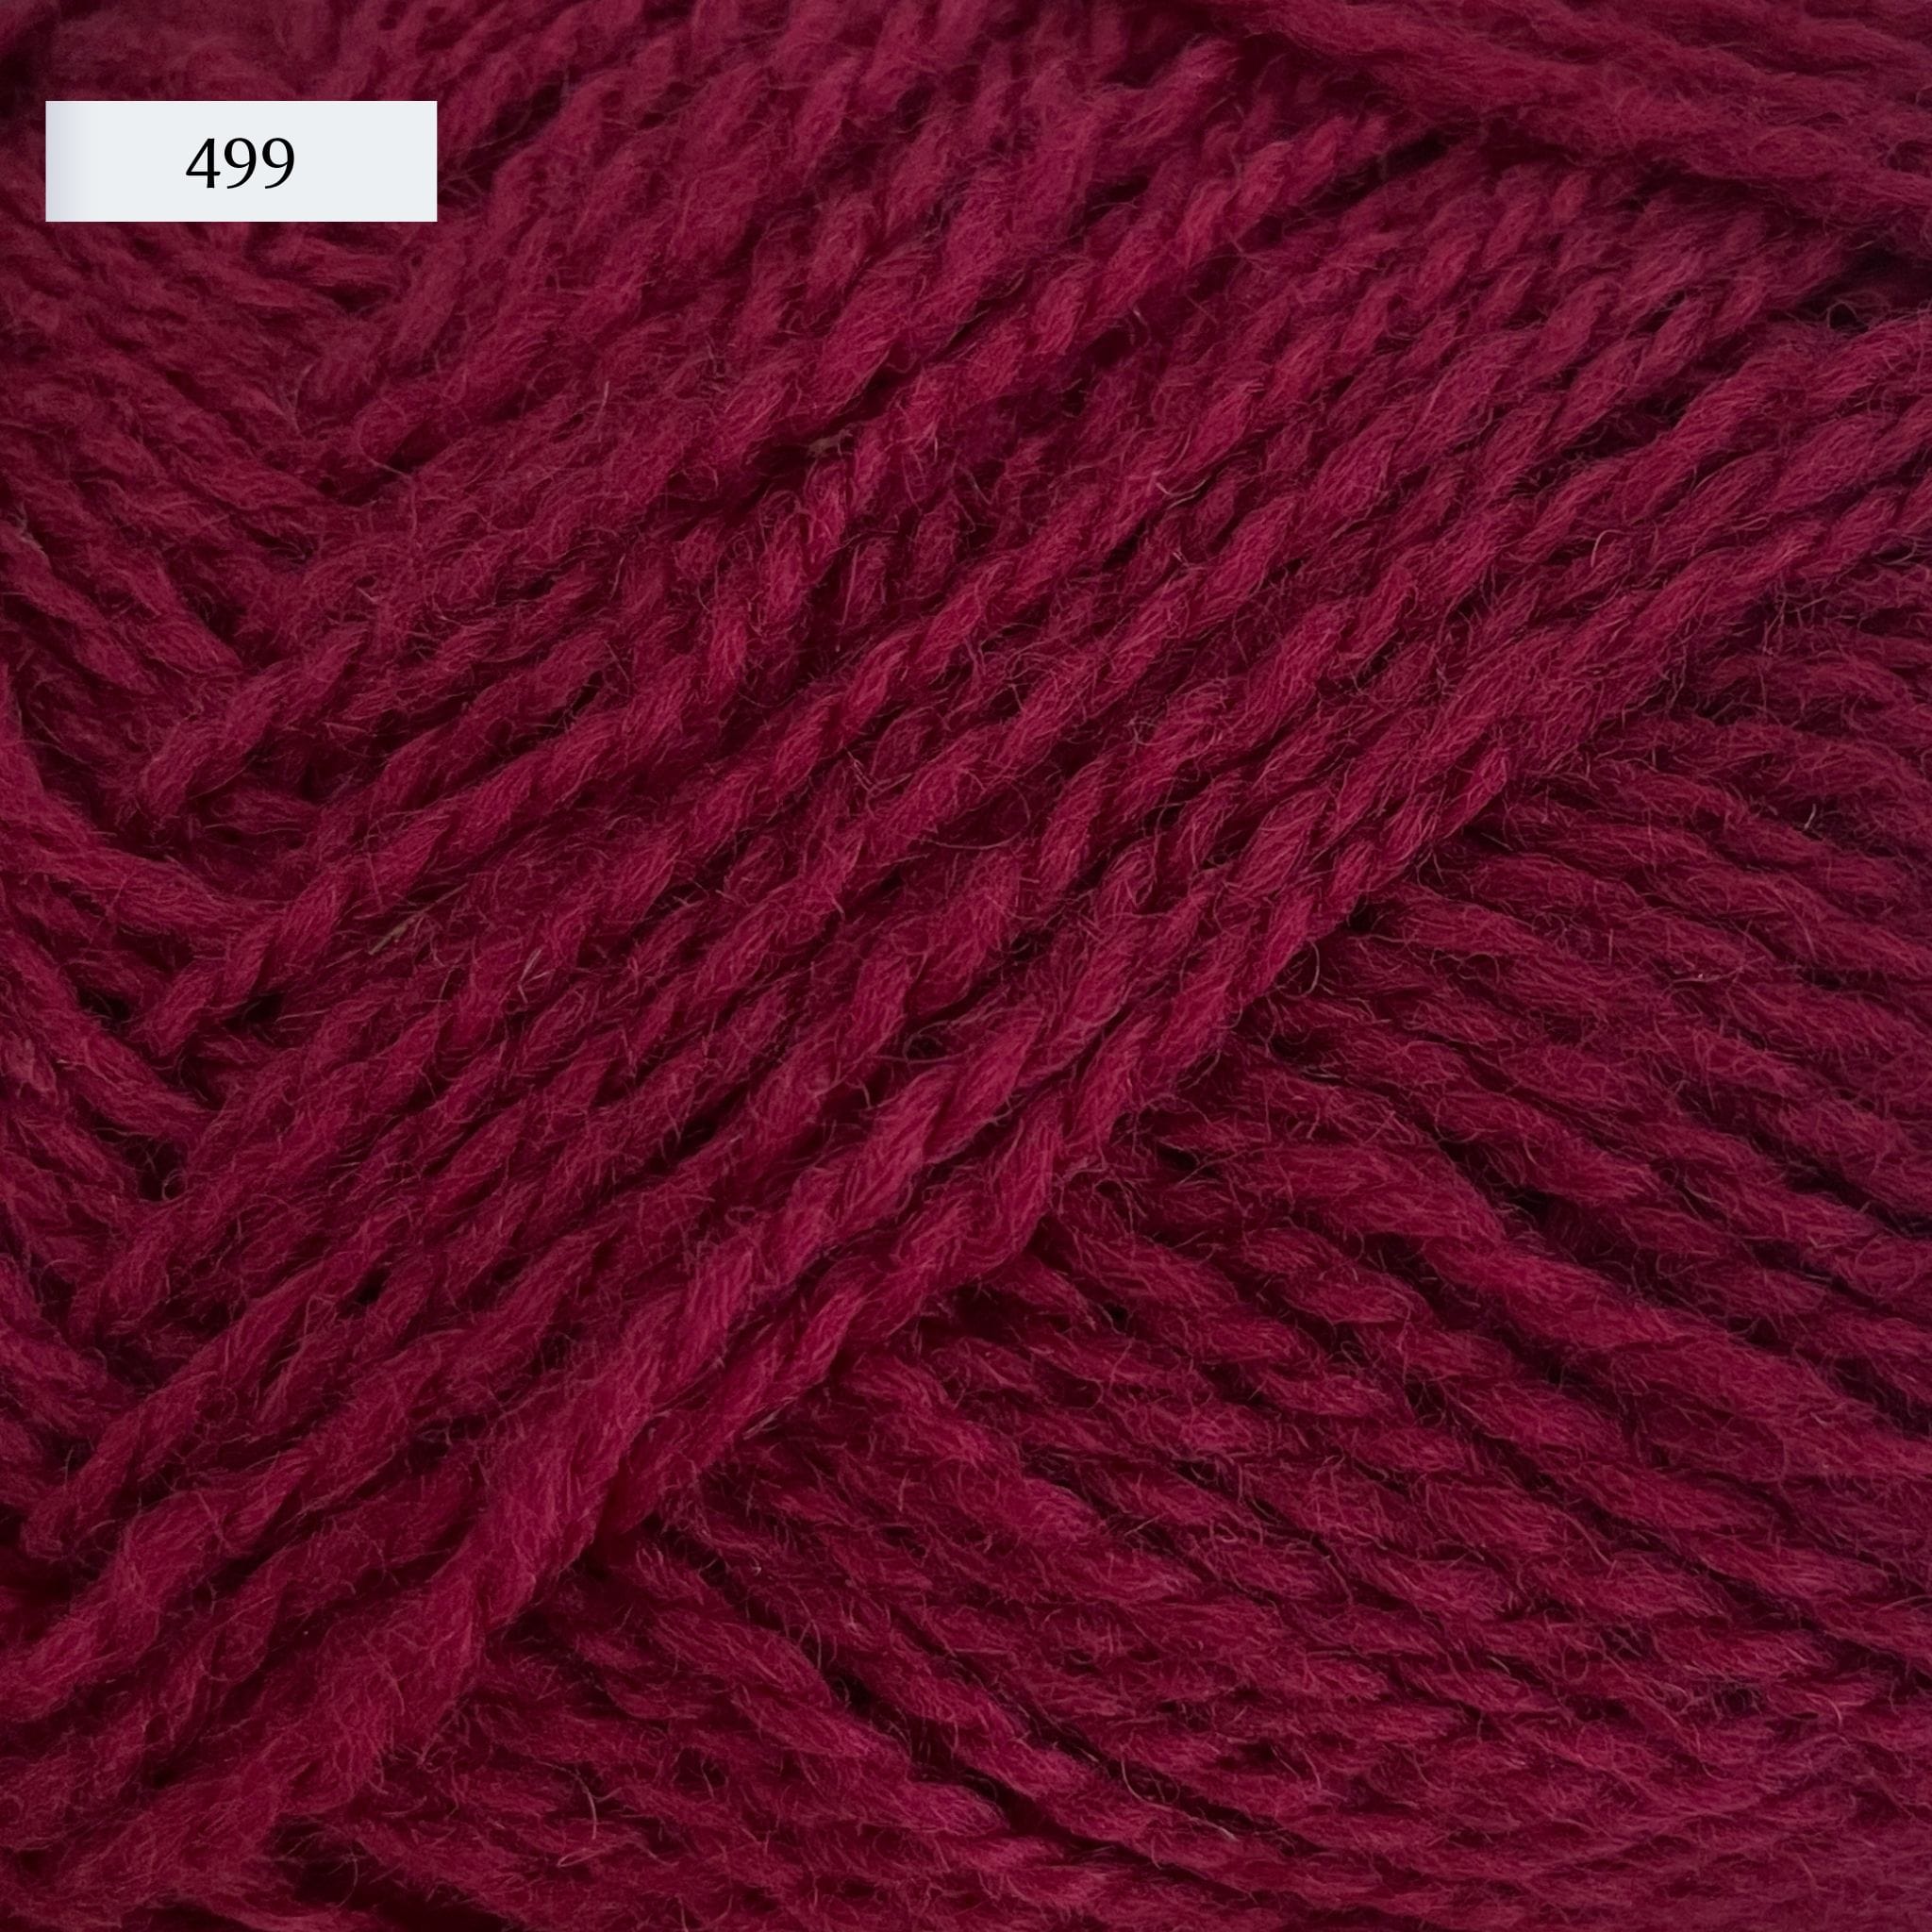 Rauma Finullgarn, a fingering/sport weight yarn, in color 499, a red-burgundy